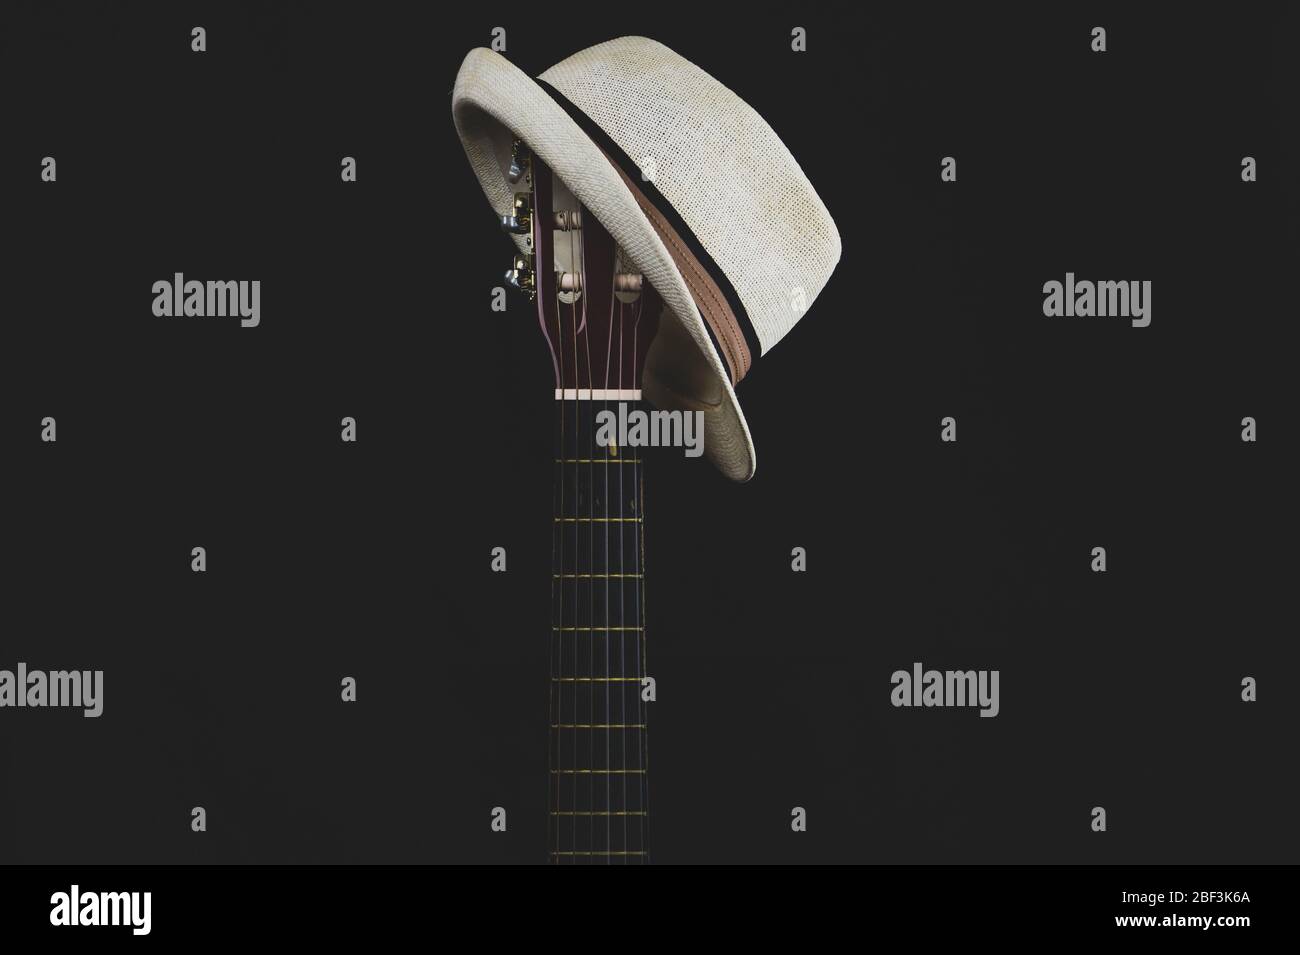 Weißer Hut hängt auf der Gitarre Griffbrett. Akustisches Musikinstrument. Saiten auf der Gitarre Hals Nahaufnahme Stockfoto